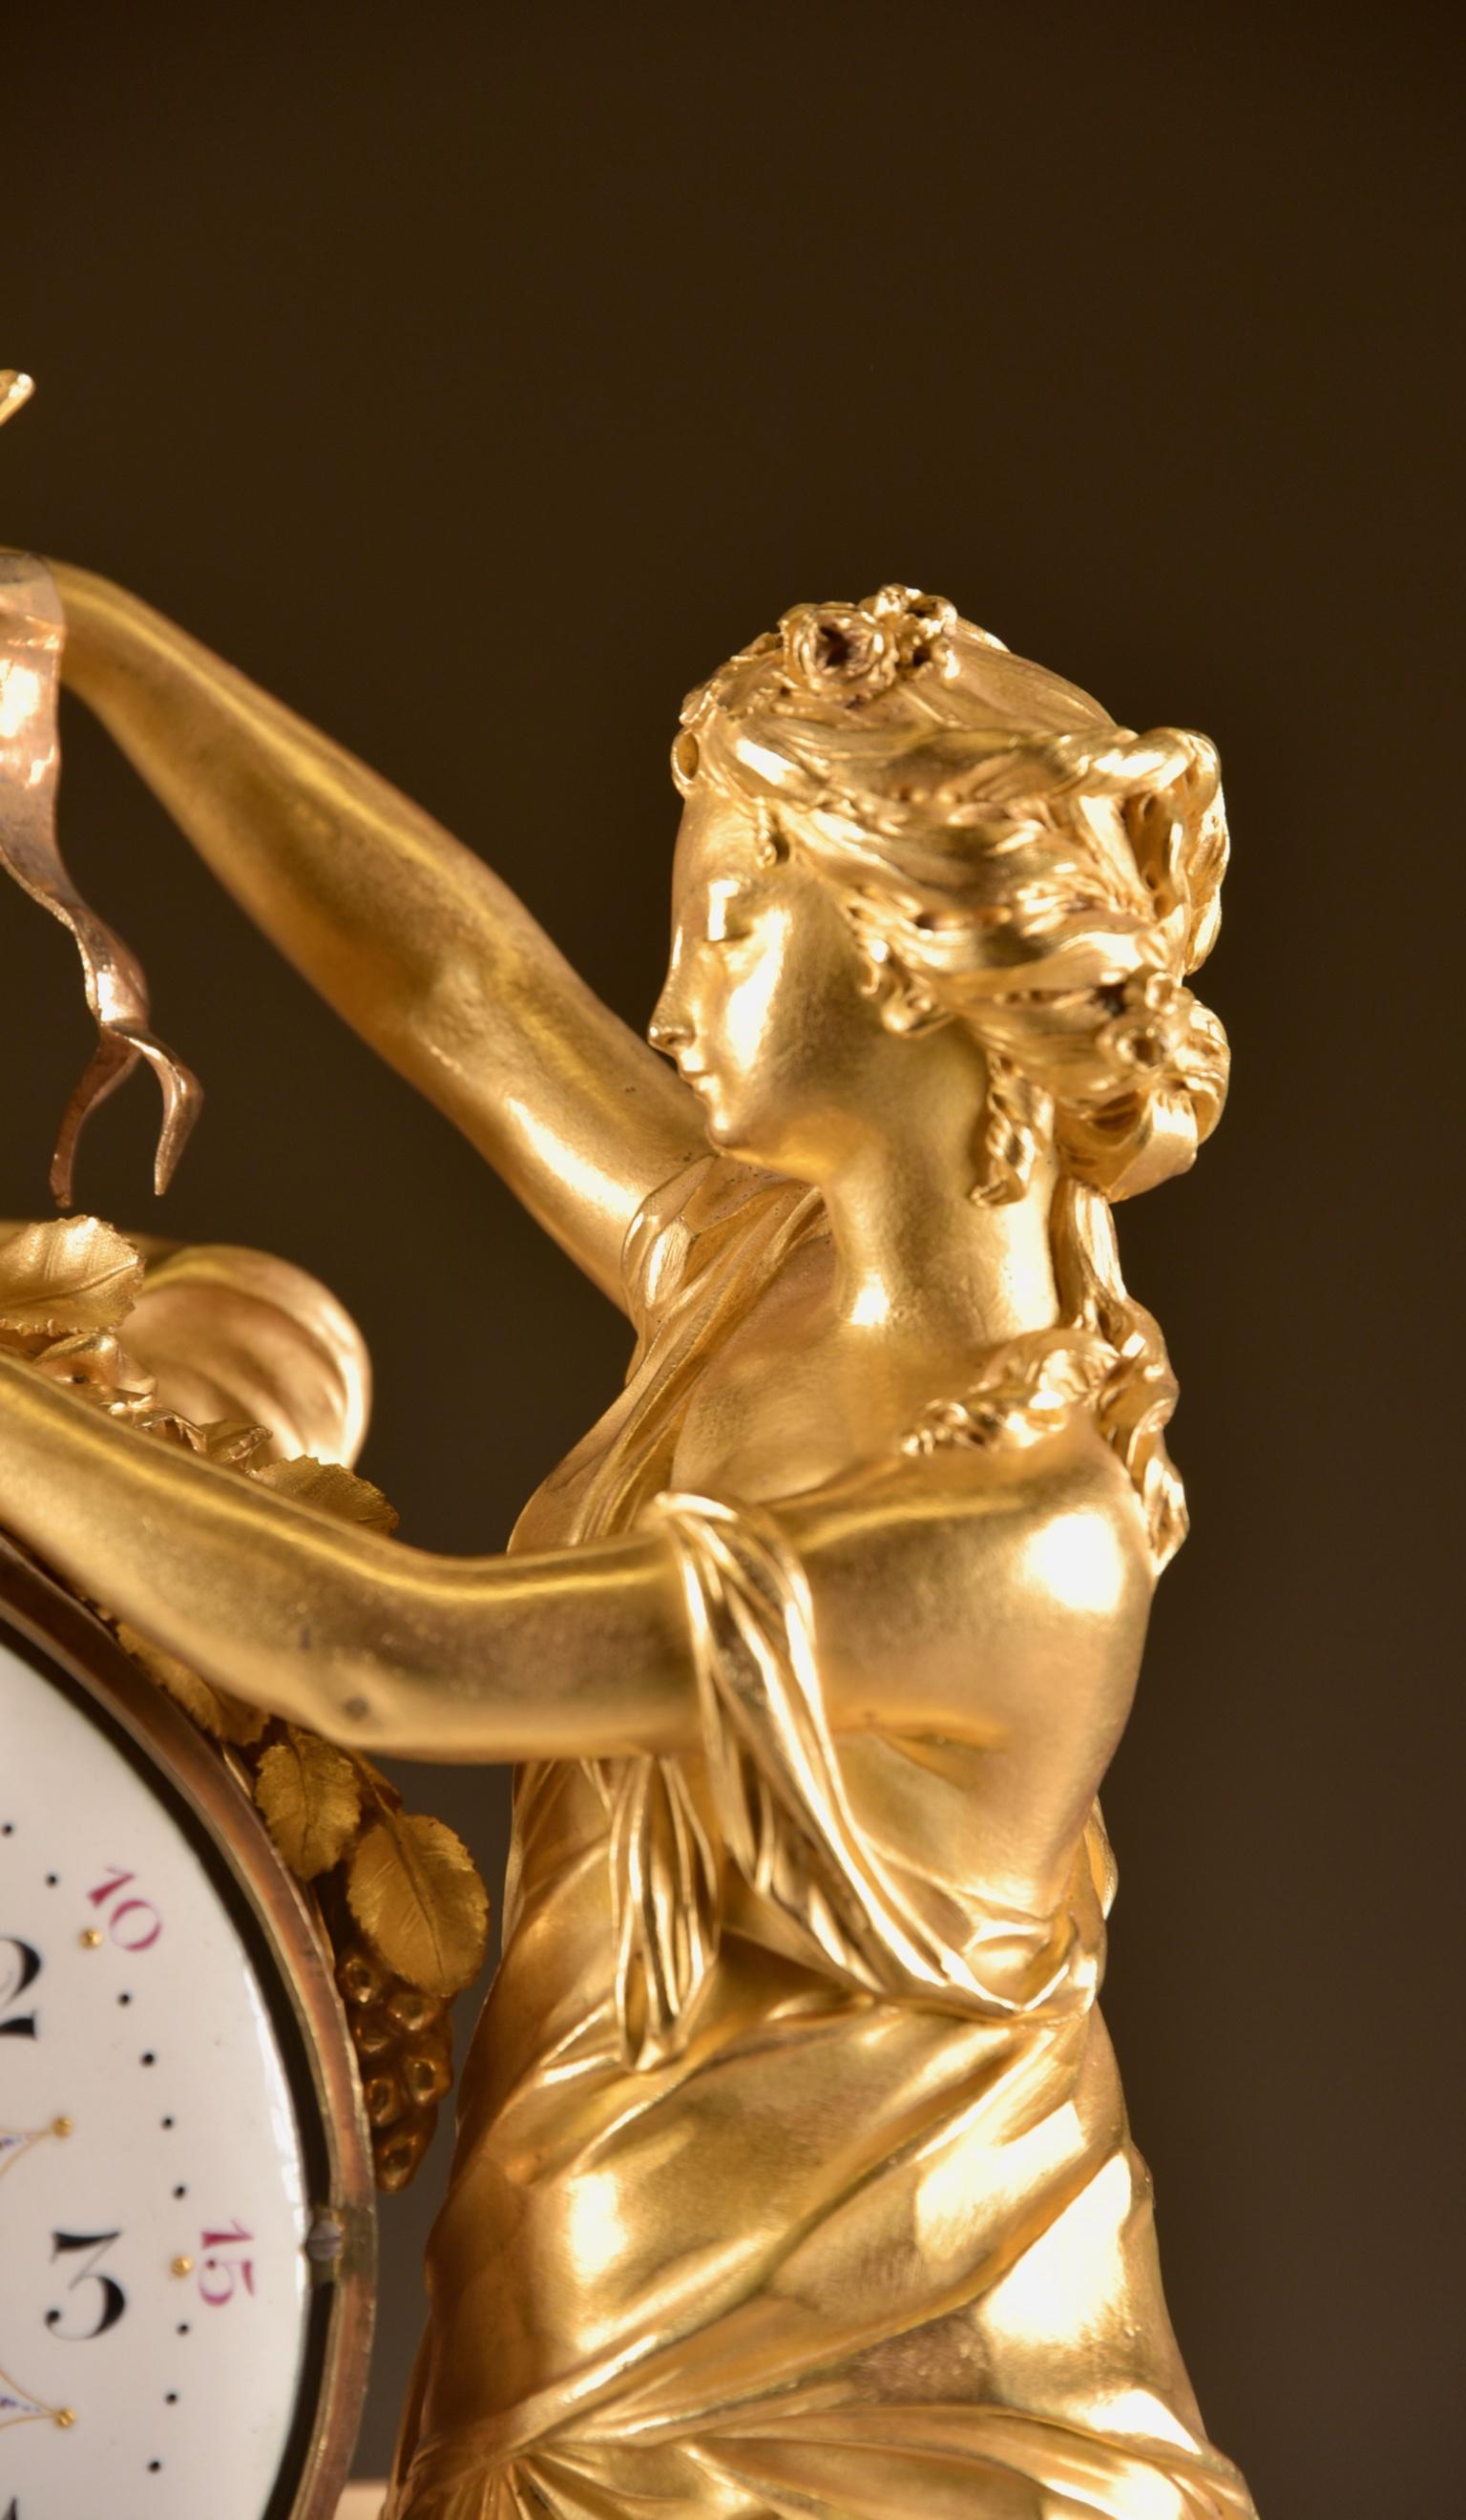 Large Louis XVI clock (1780), Venus and cherub, Amor wird seiner Waffen beraubt 2